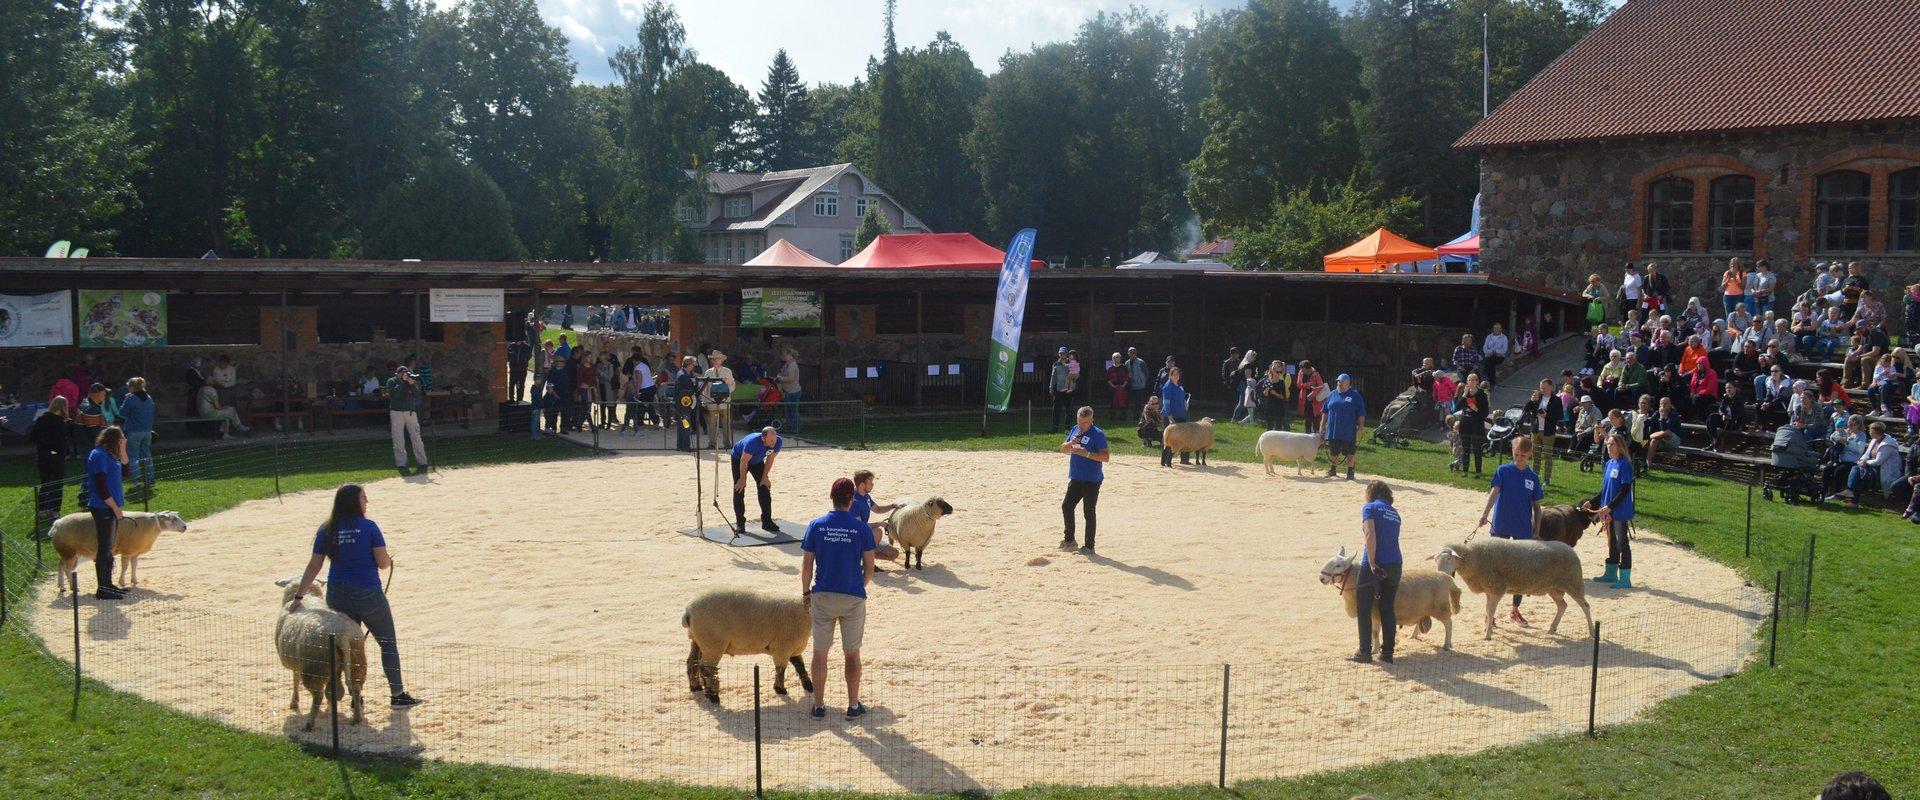 Viron maatalousmuseon tapahtuma Rotueläin, kuvassa kilpailuun osallistuvia lampaita